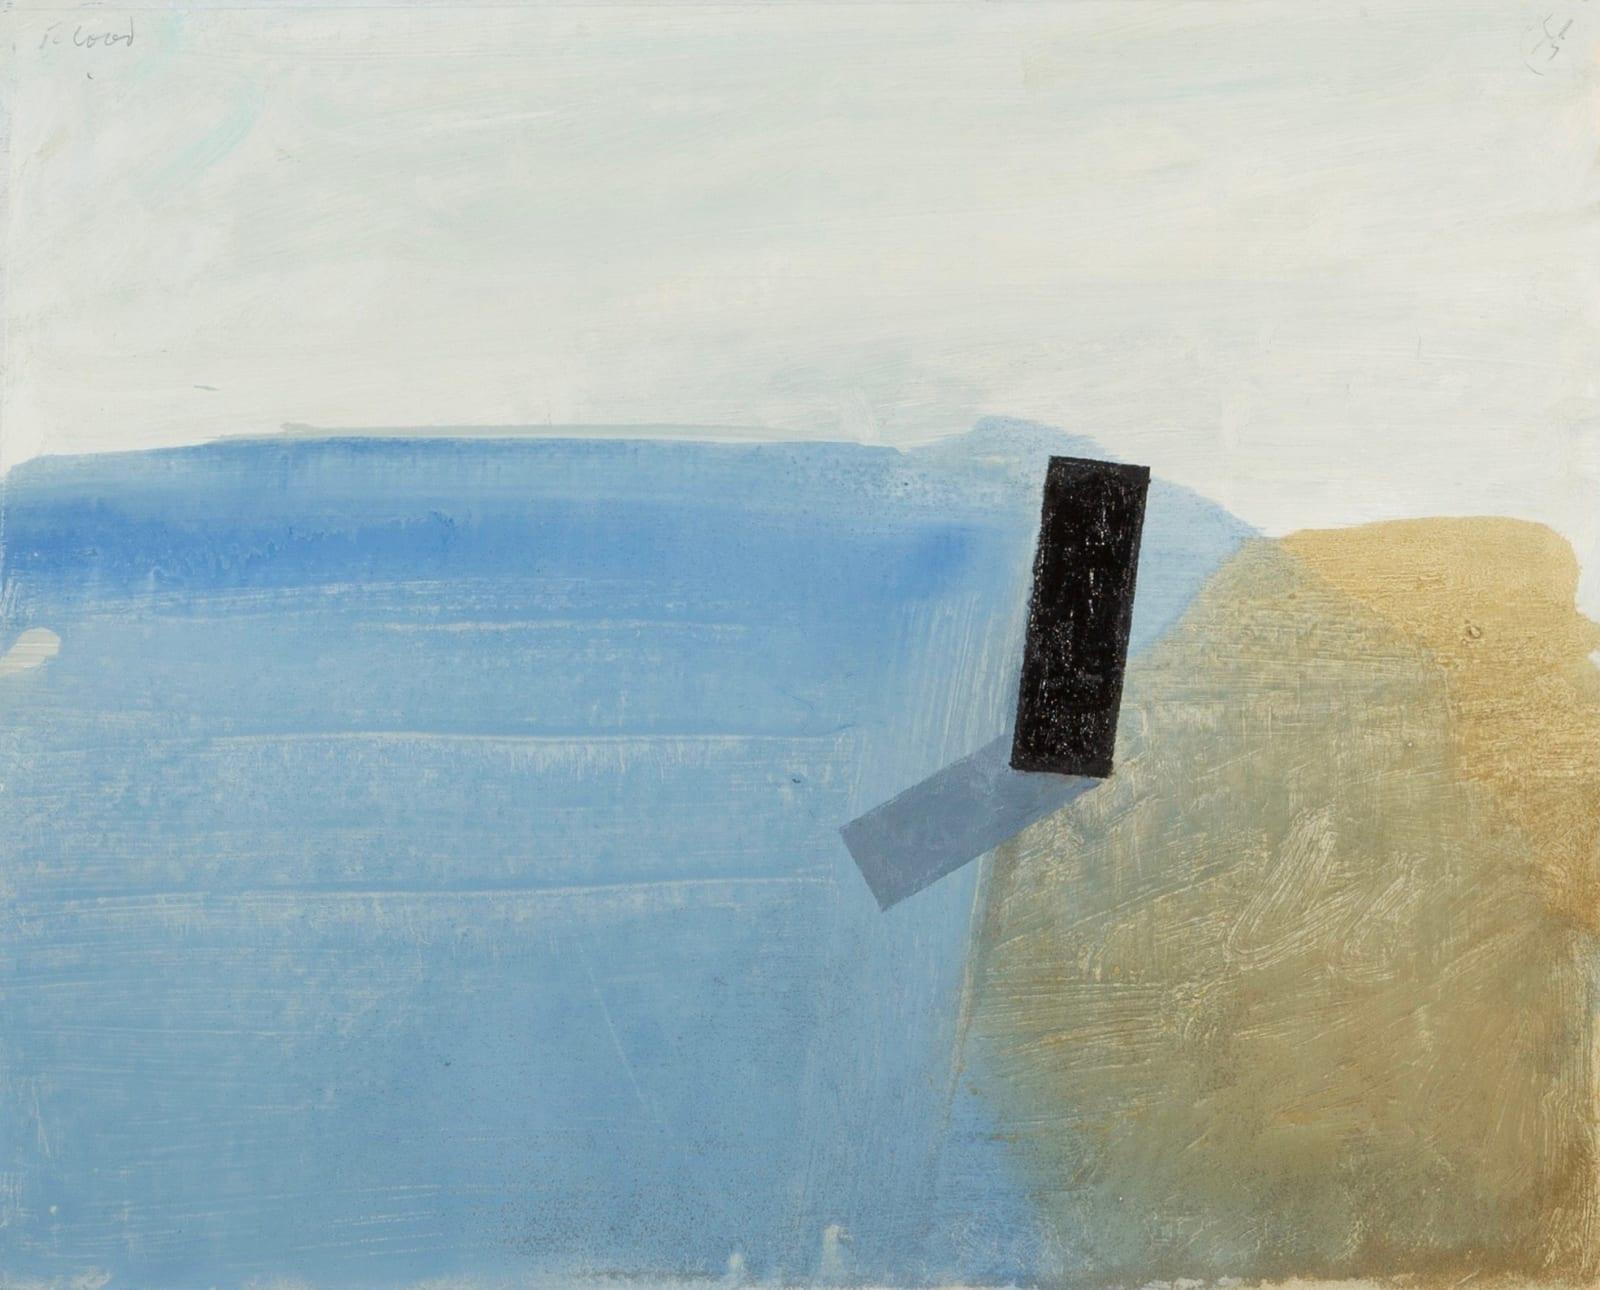 Öl und Sand auf Tafel „Flood“ Gemälde von Keith Purser, Gemälde, 2015